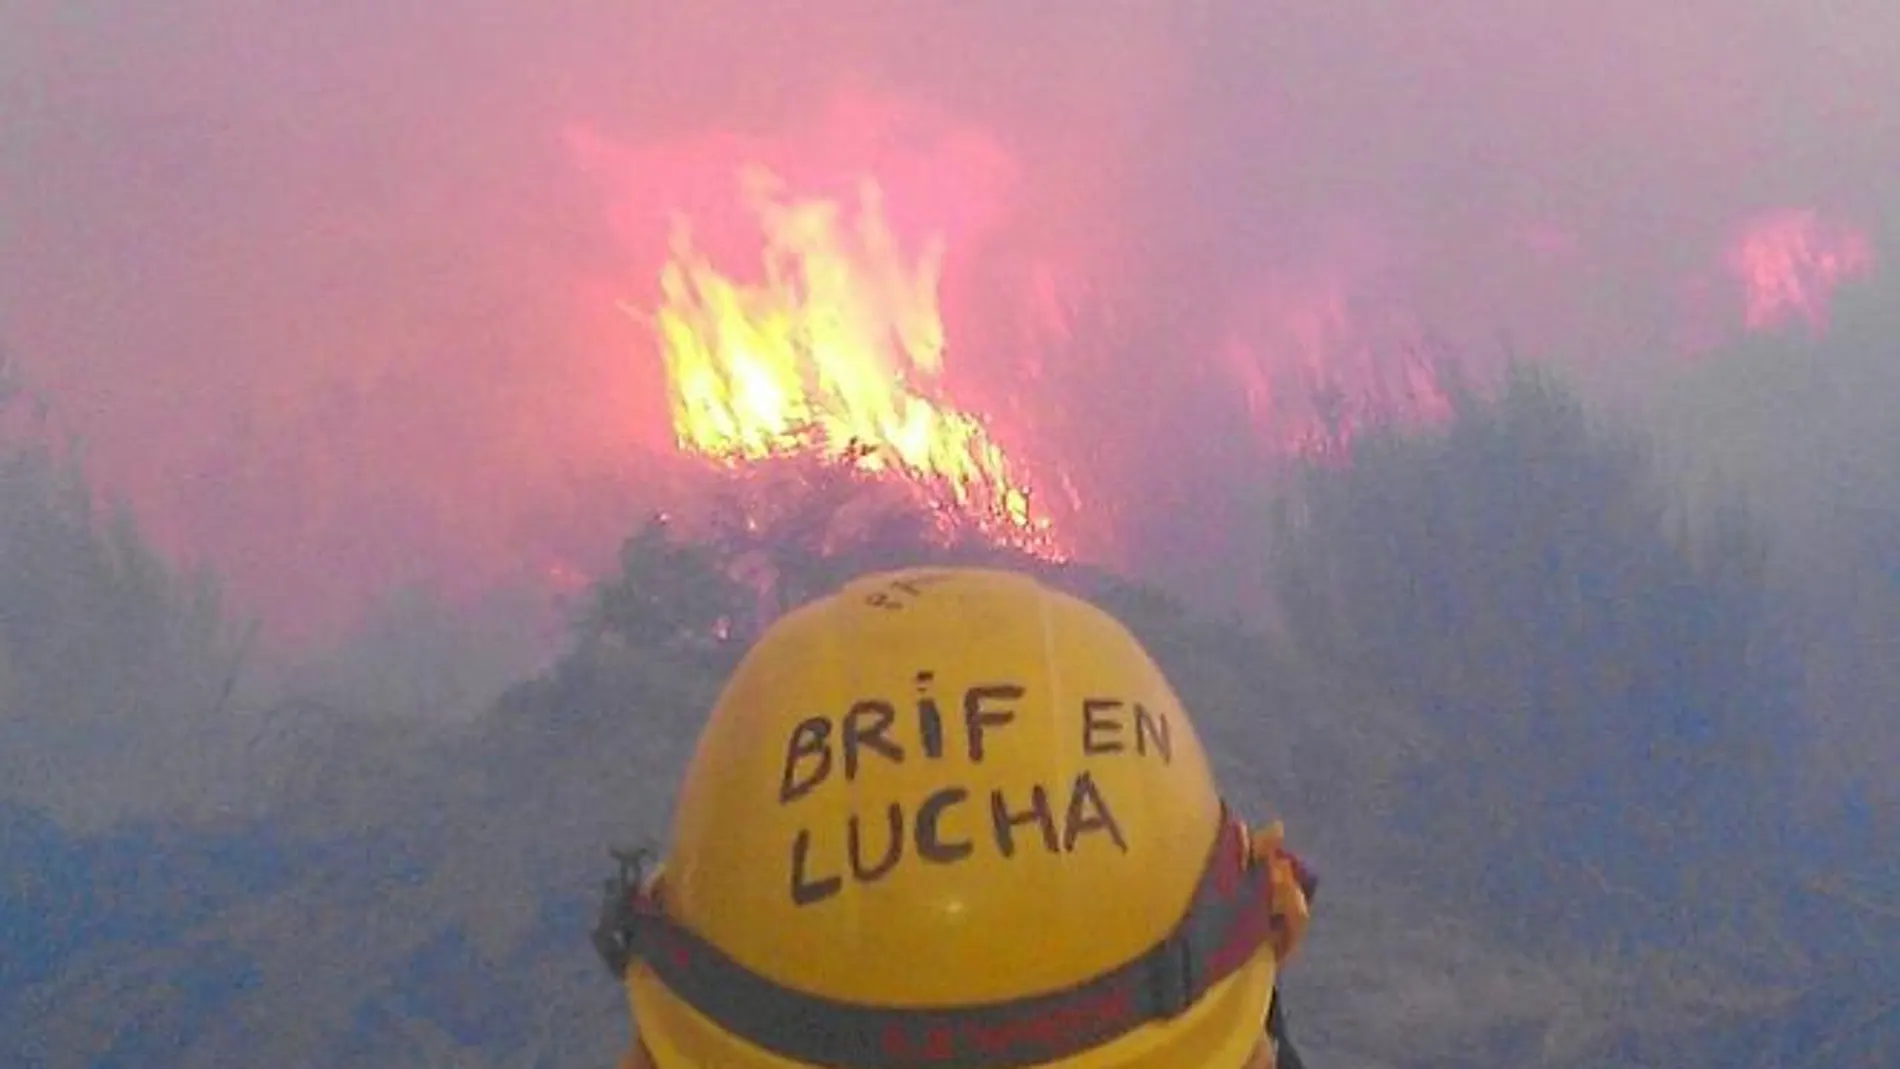 Las brigadas forestales llevan 36 días en huelga indefinida, pero acuden como voluntarios a los incendios, como al que se desató ayer en Orense